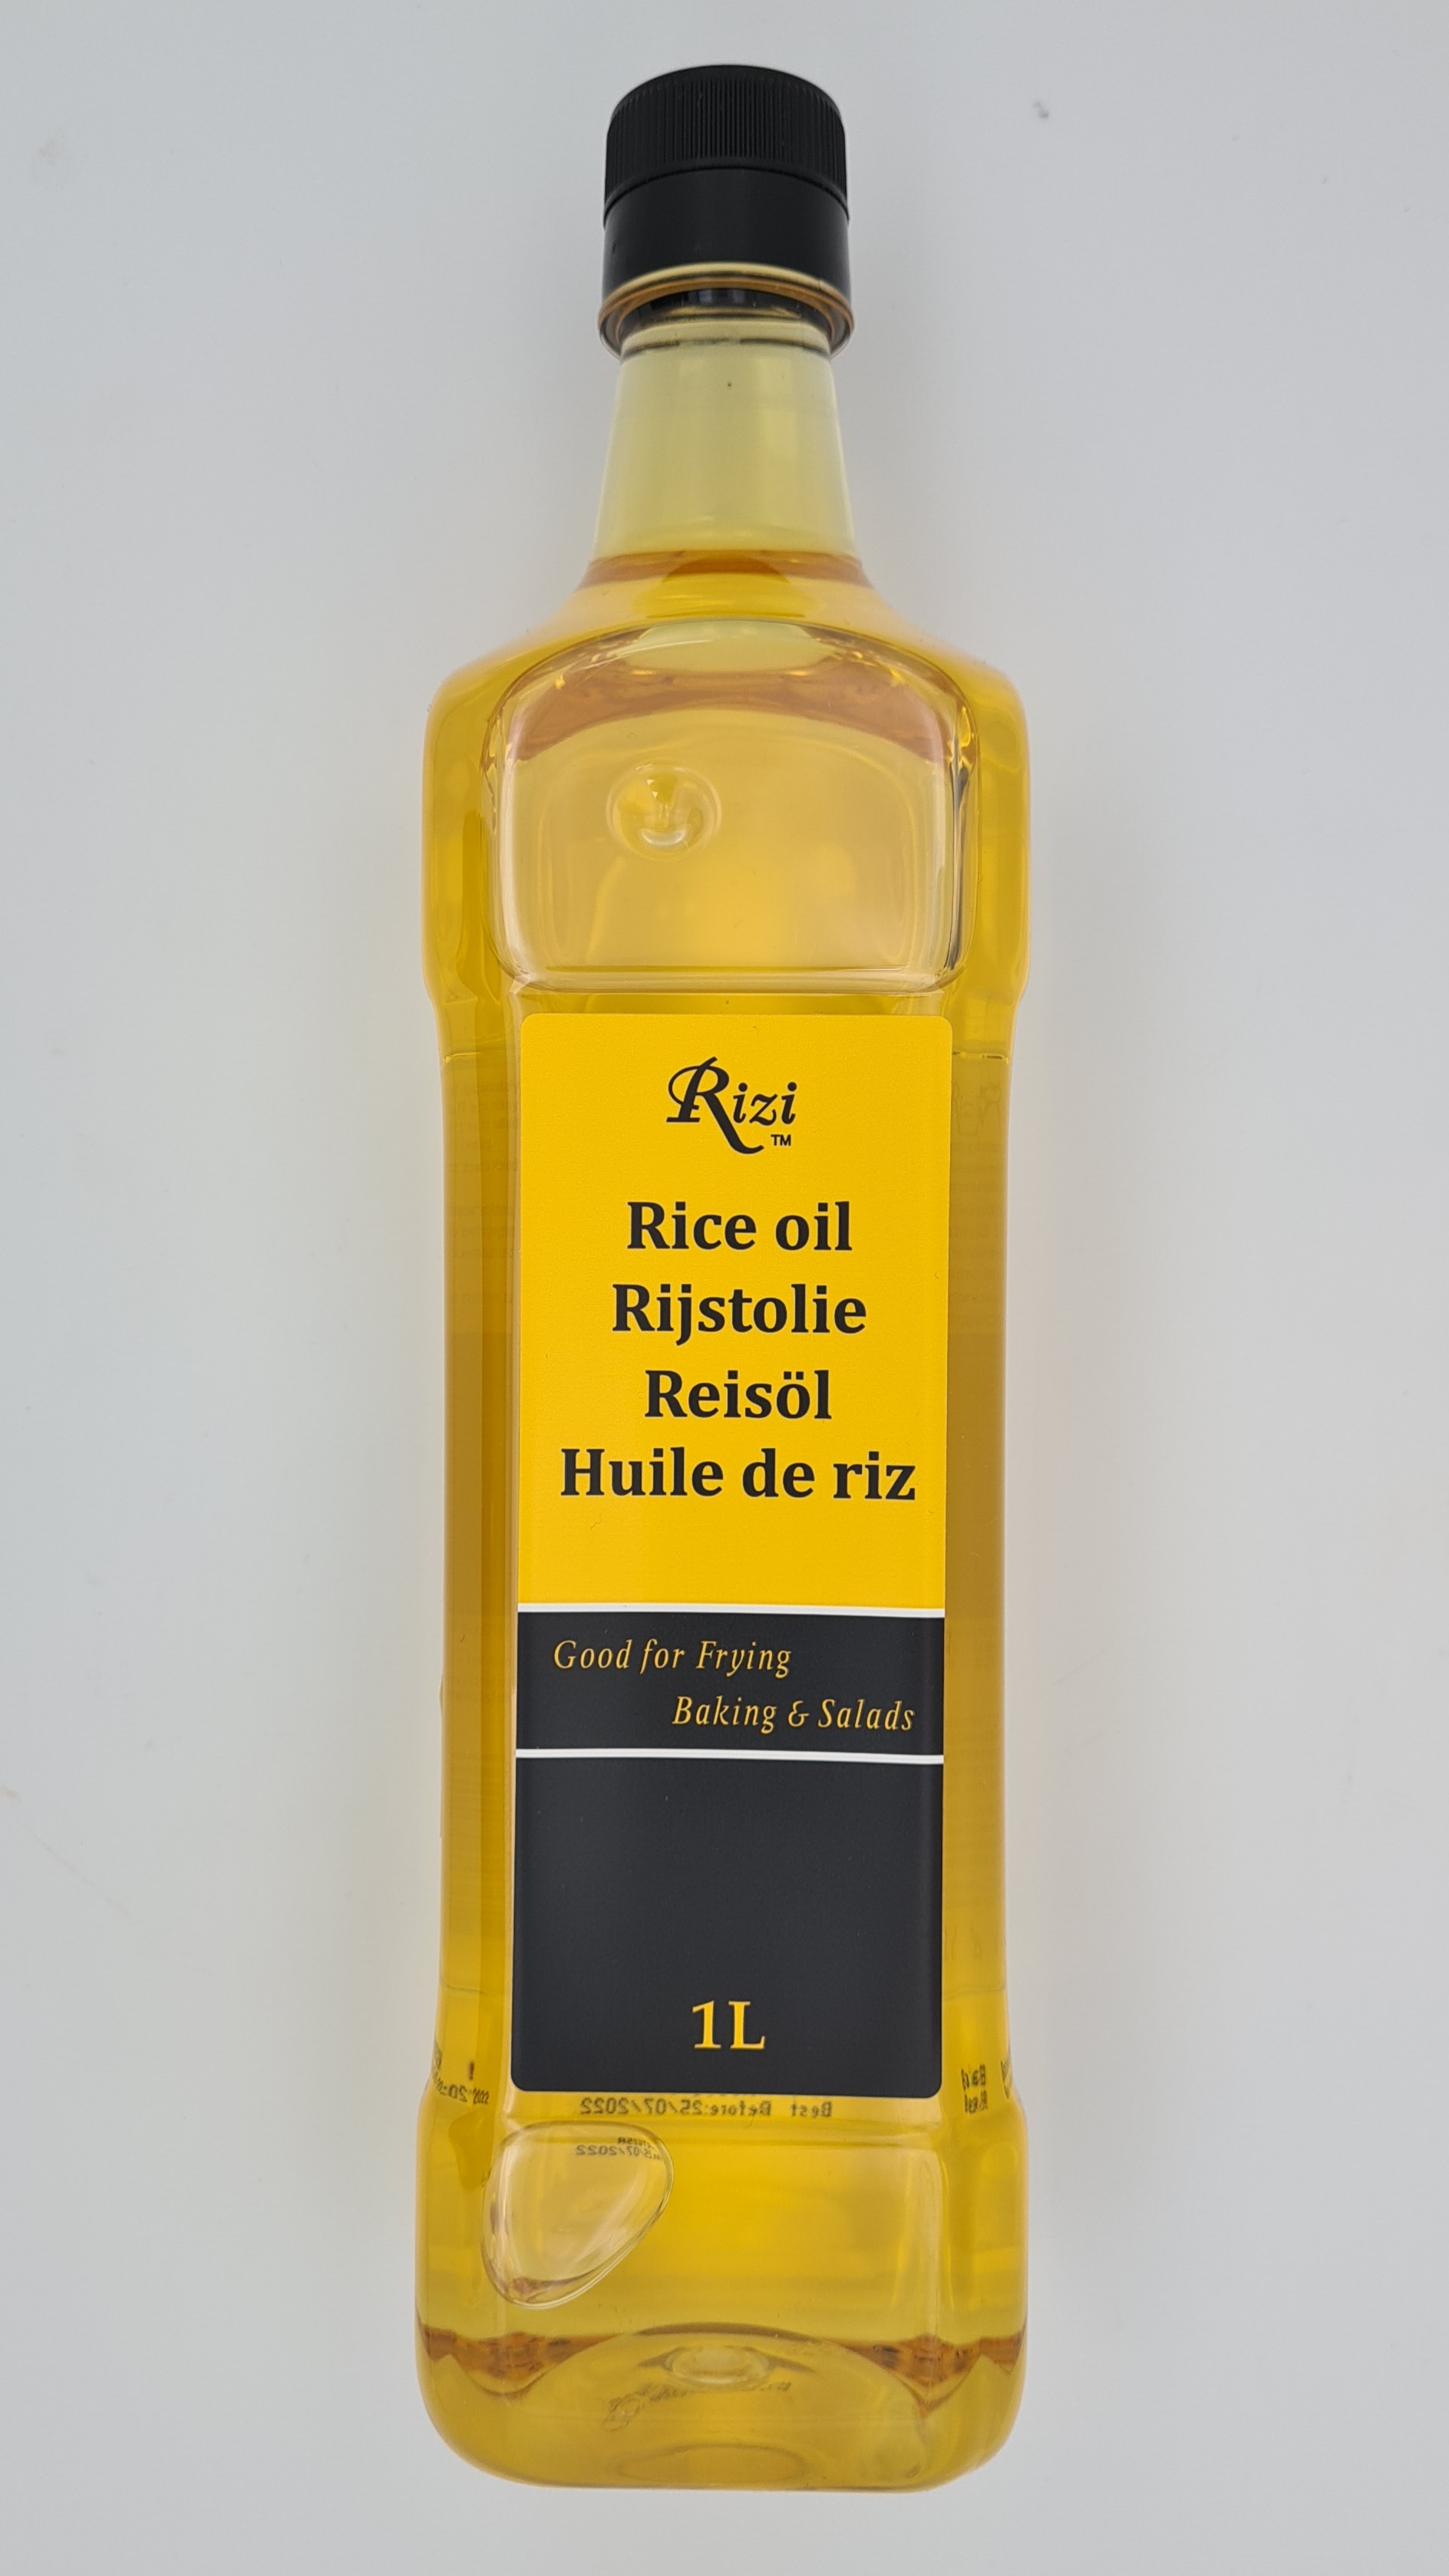 Ryžový olej Rizi Brand 1 L